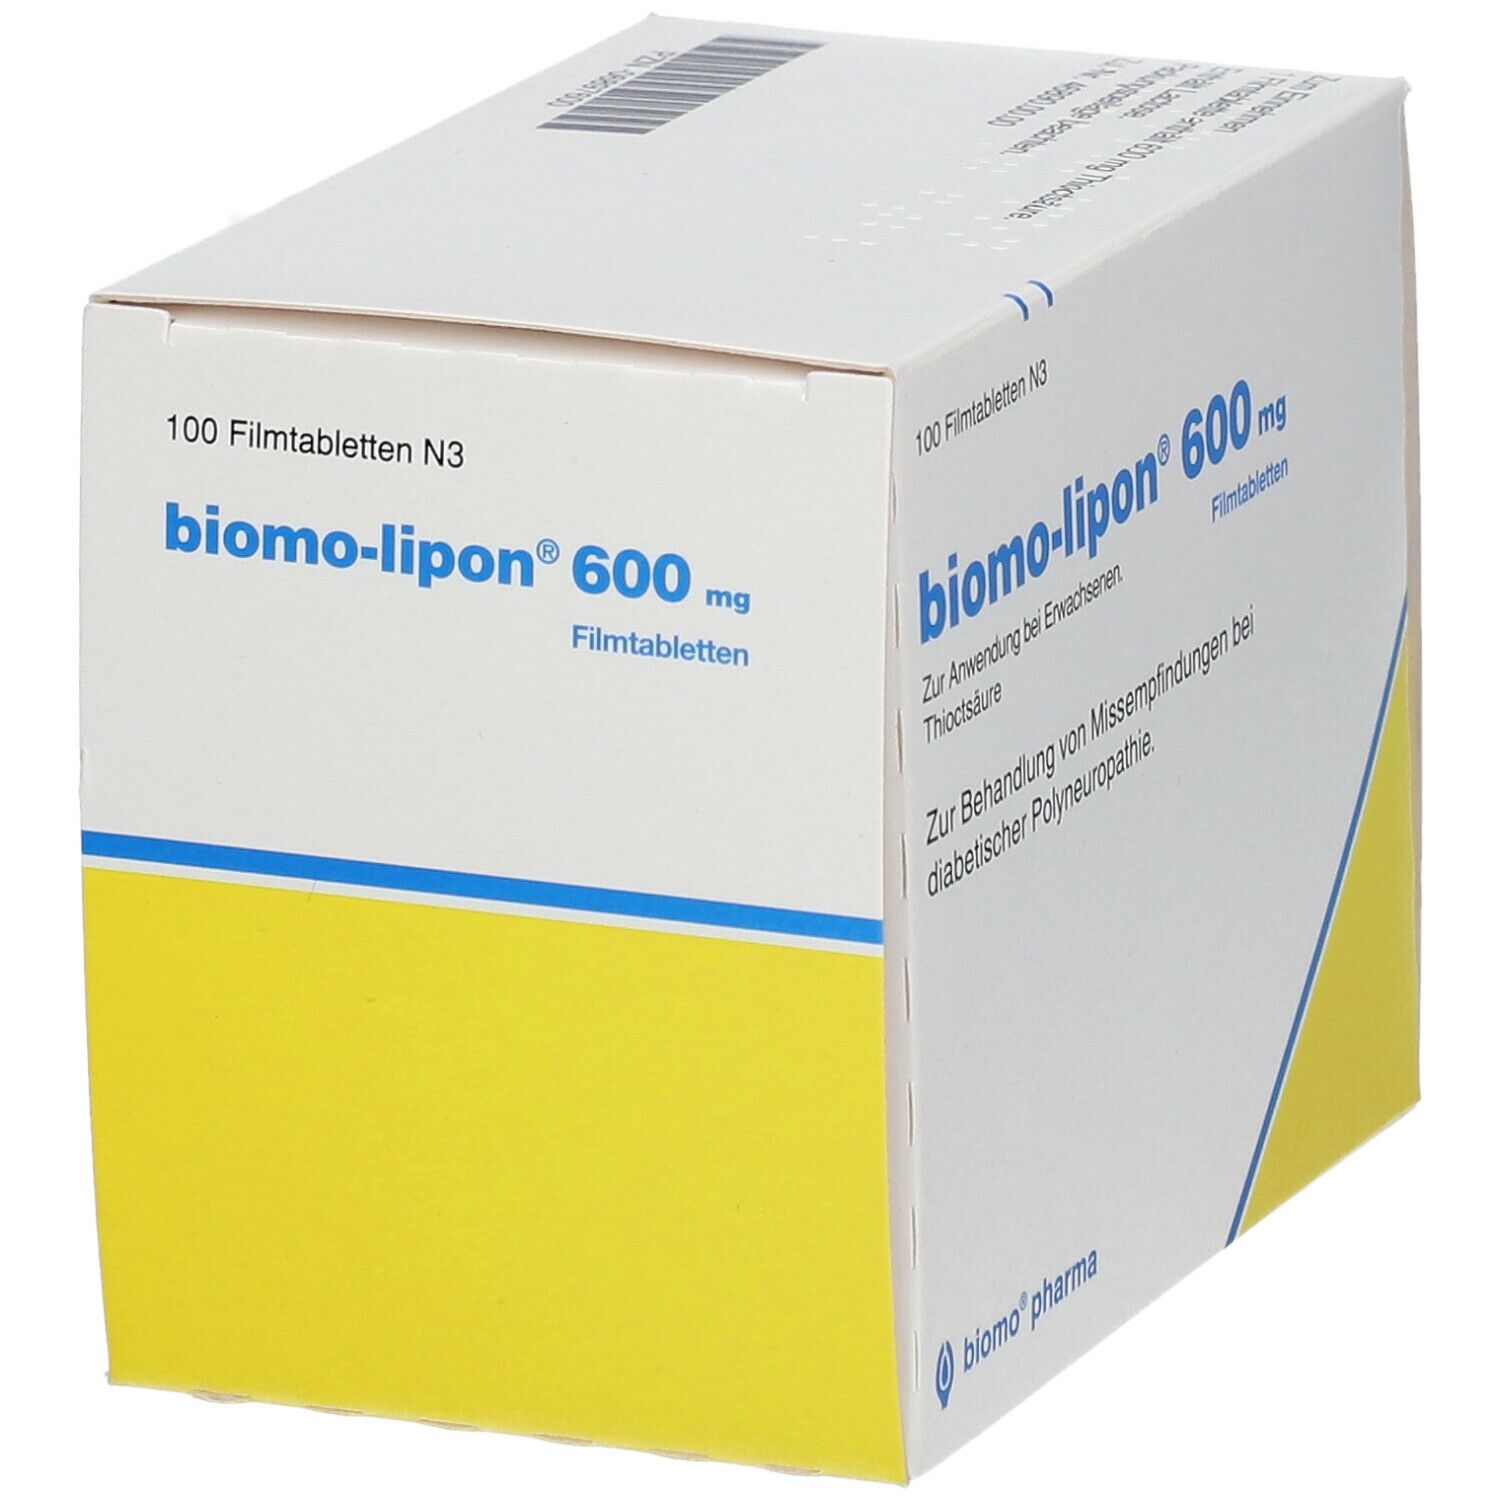 biomo-lipon® 600 mg